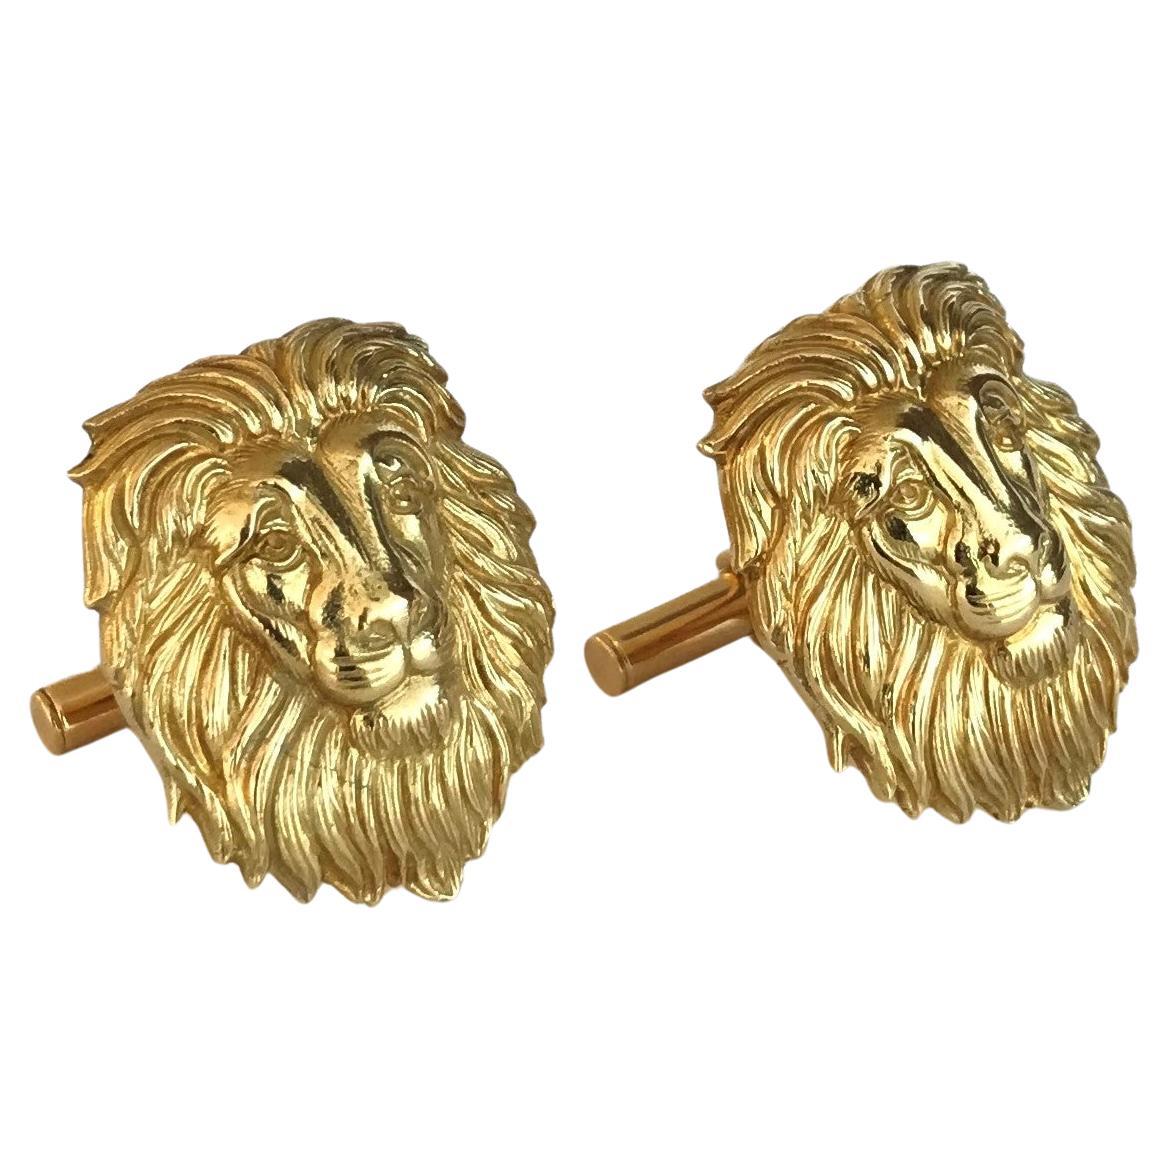 Manschettenknöpfe „Lion“ von Rosior, handgehäkelt in Gelbgold